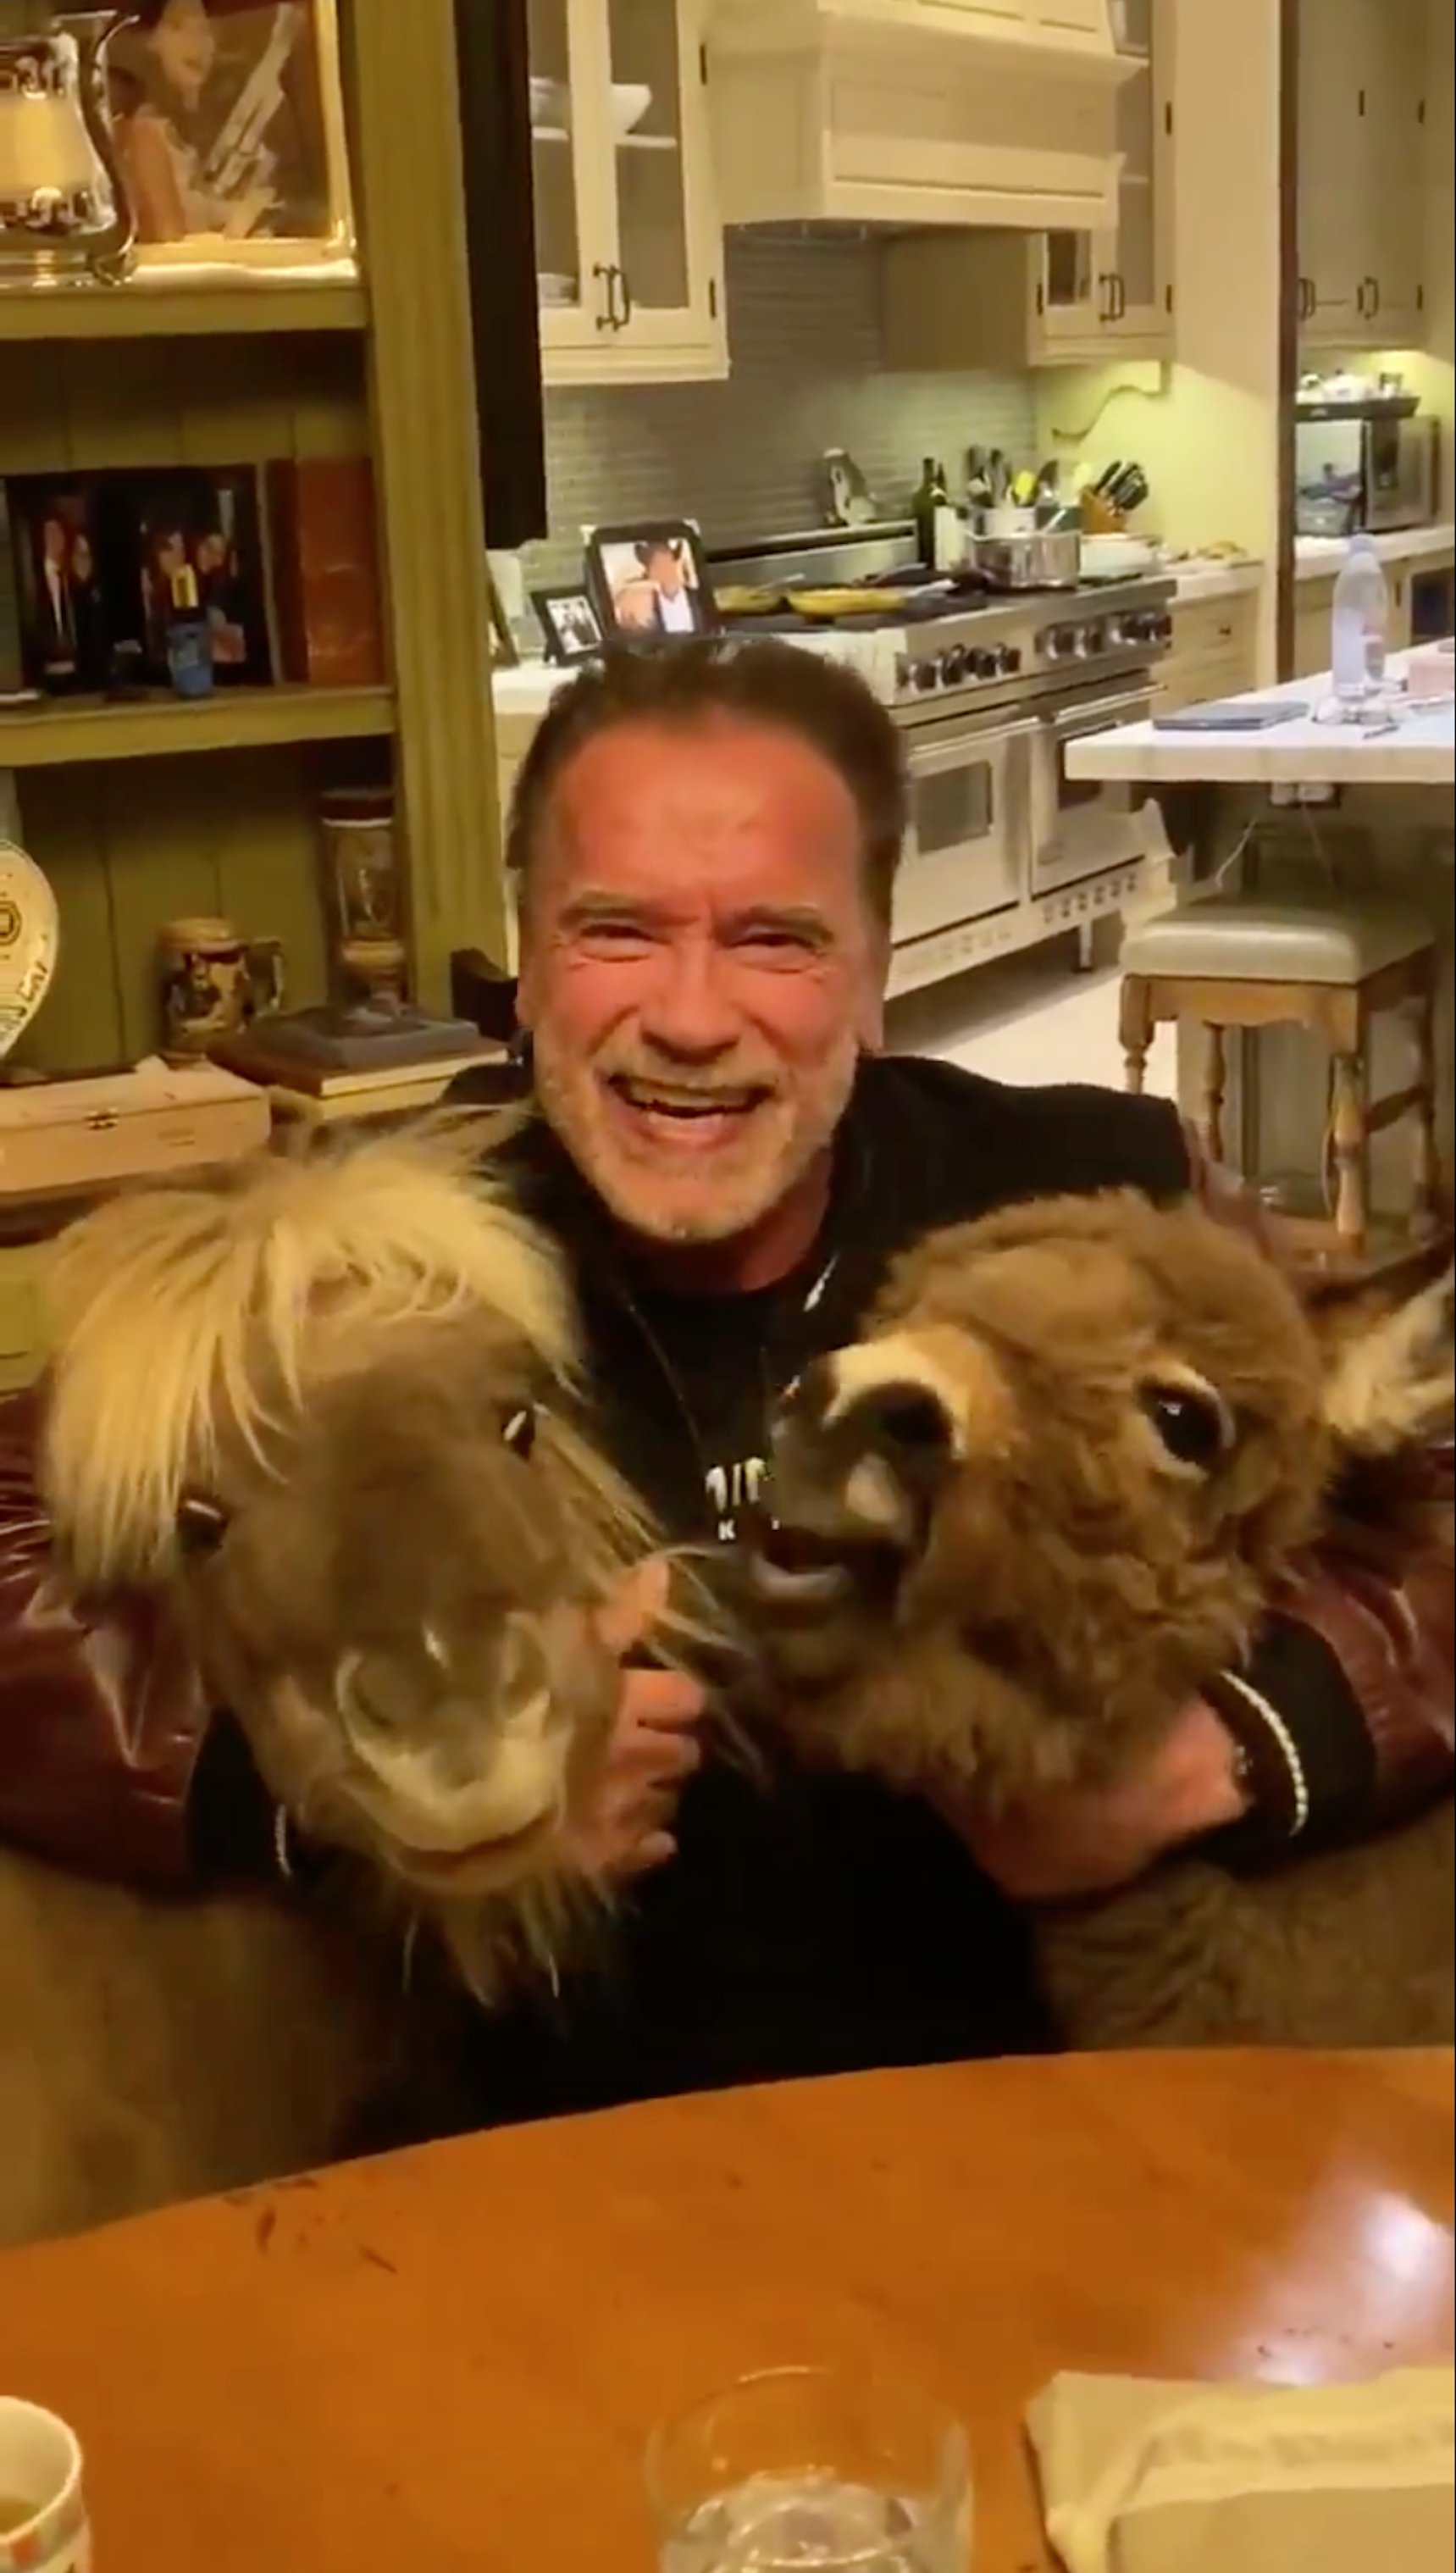 Inverosímil vídeo de Schwarzenegger dando de comer a asnos: "todos en casa"